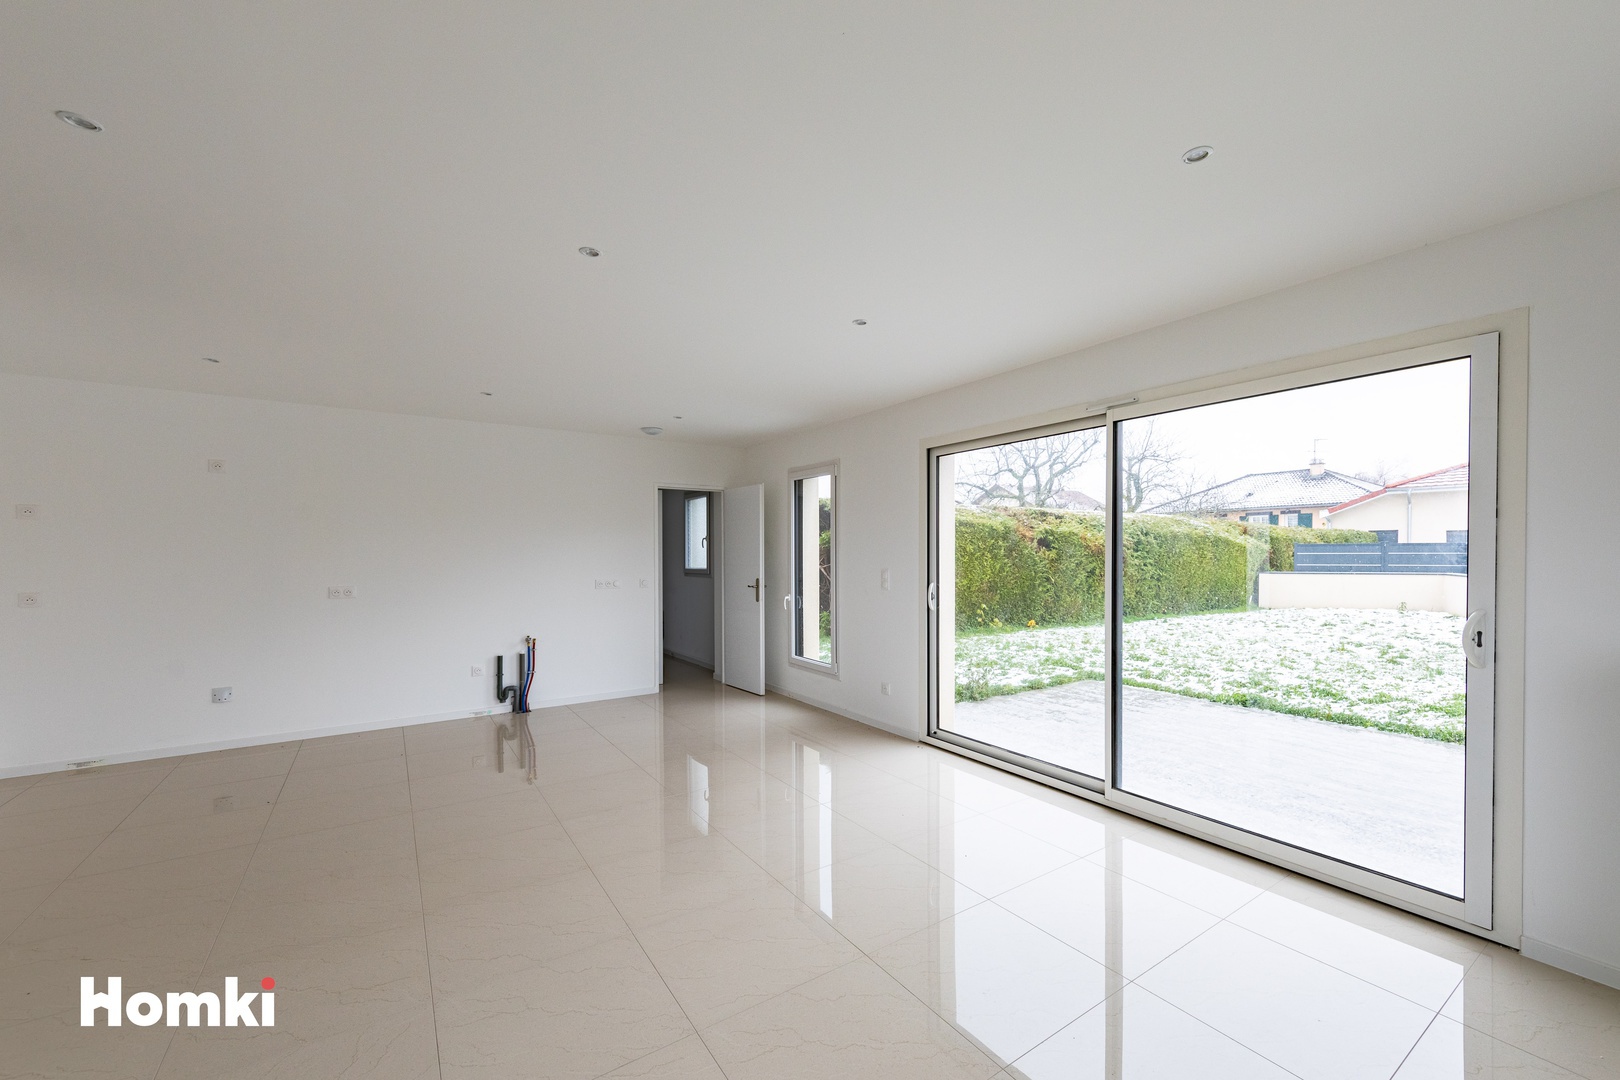 Homki - Vente Maison/villa  de 114.0 m² à Bourg-en-Bresse 01000